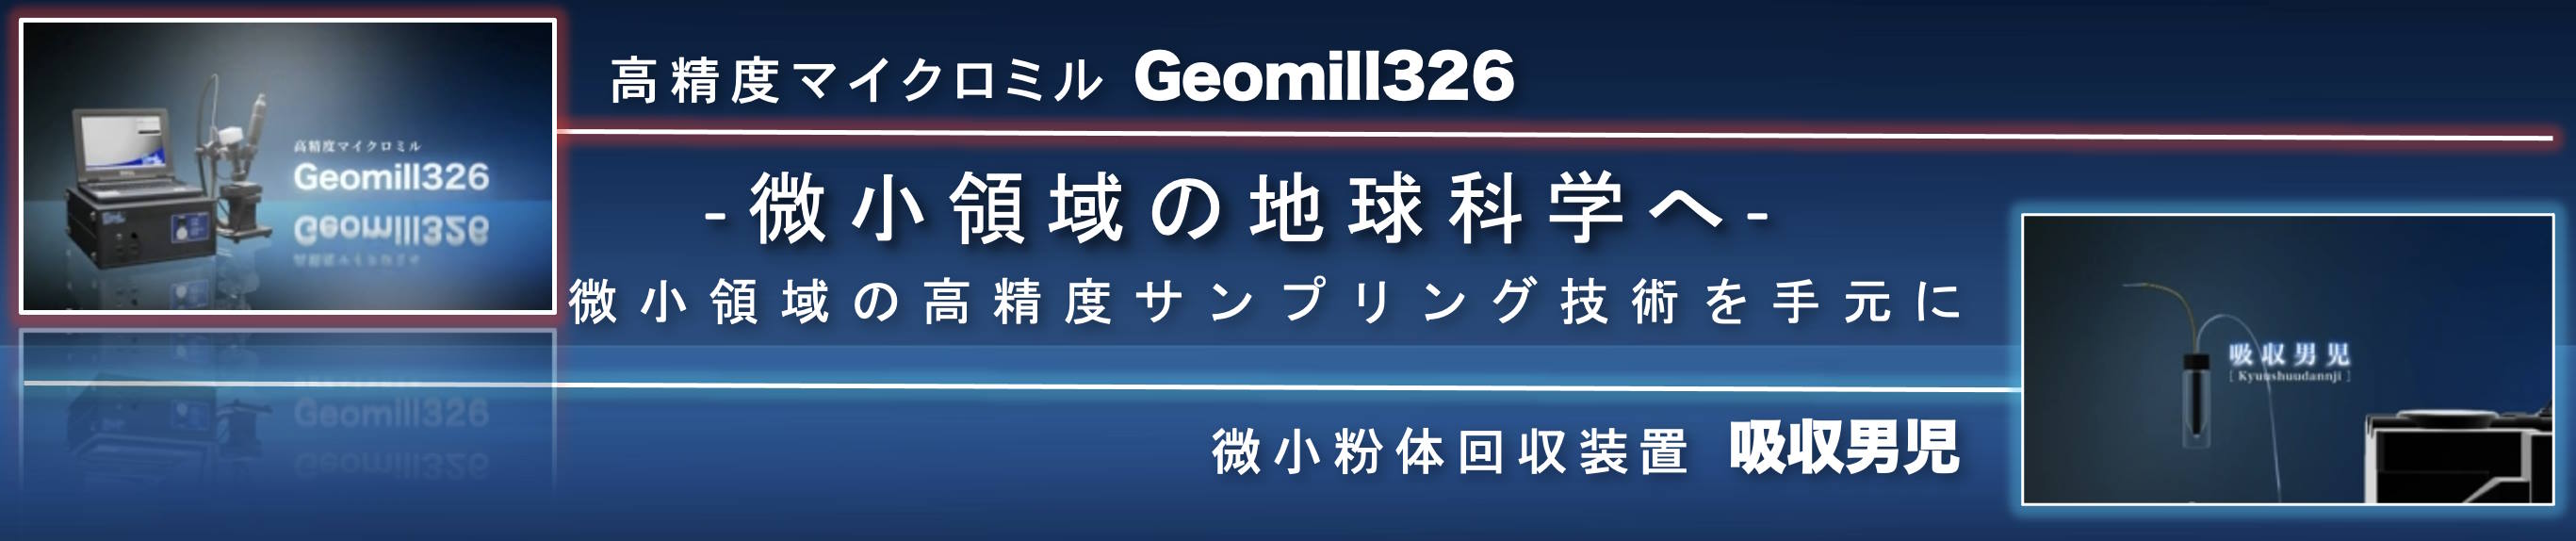 Geomill326!